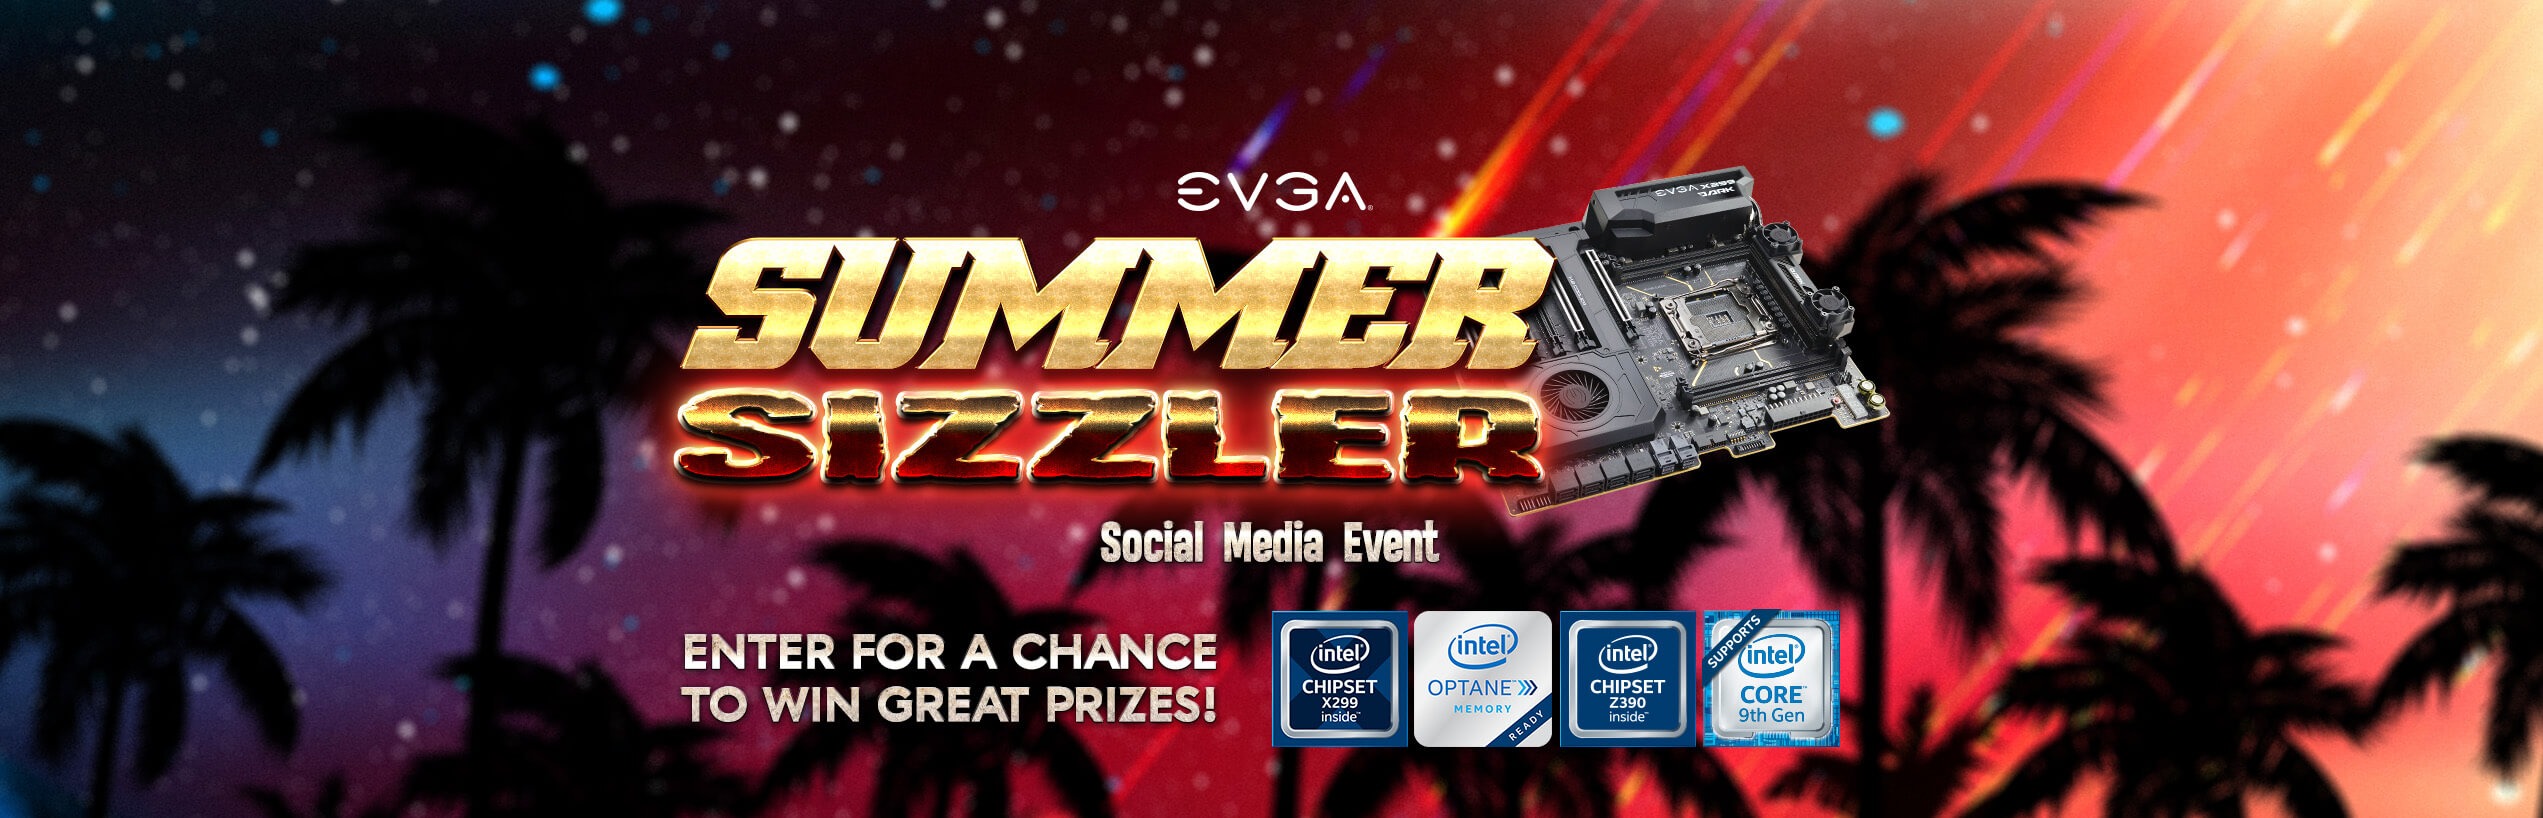 EVGA Summer Sizzler Social Media Event